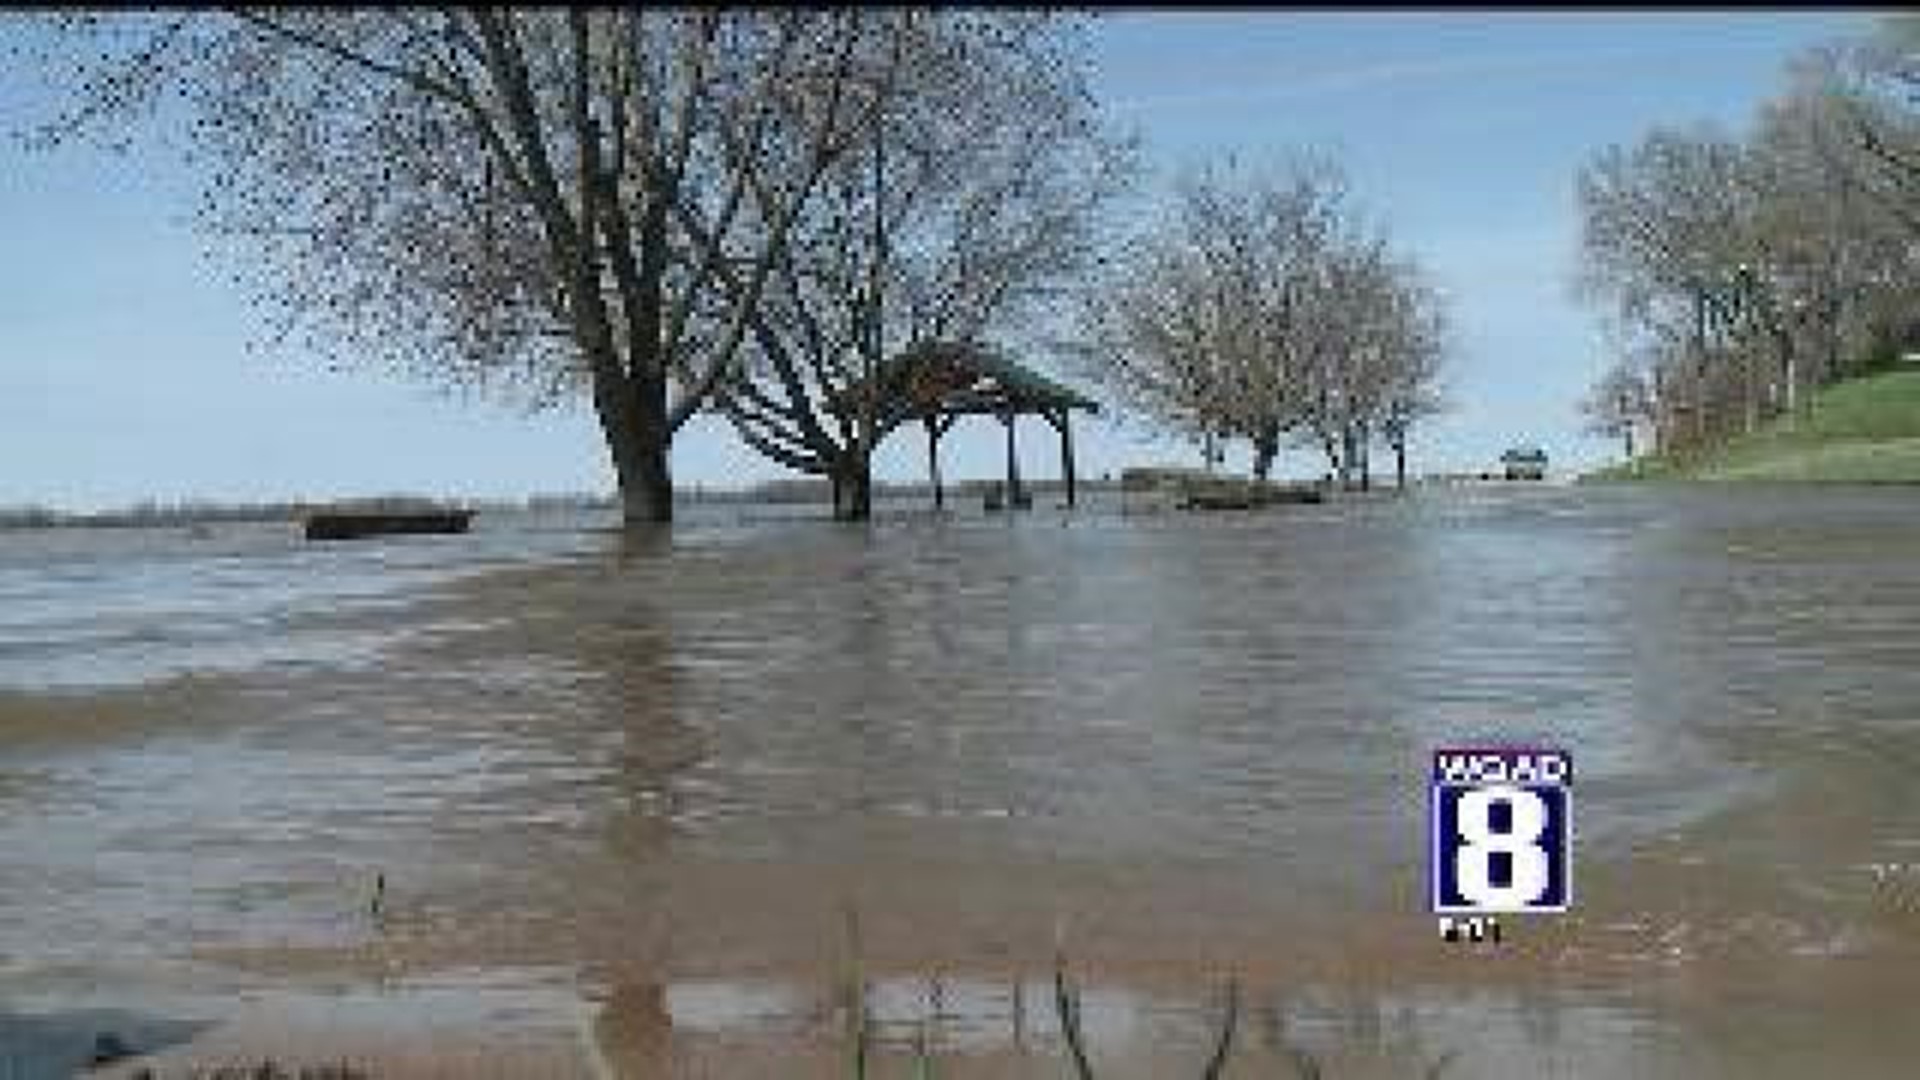 Water surpasses levee in Oquawka